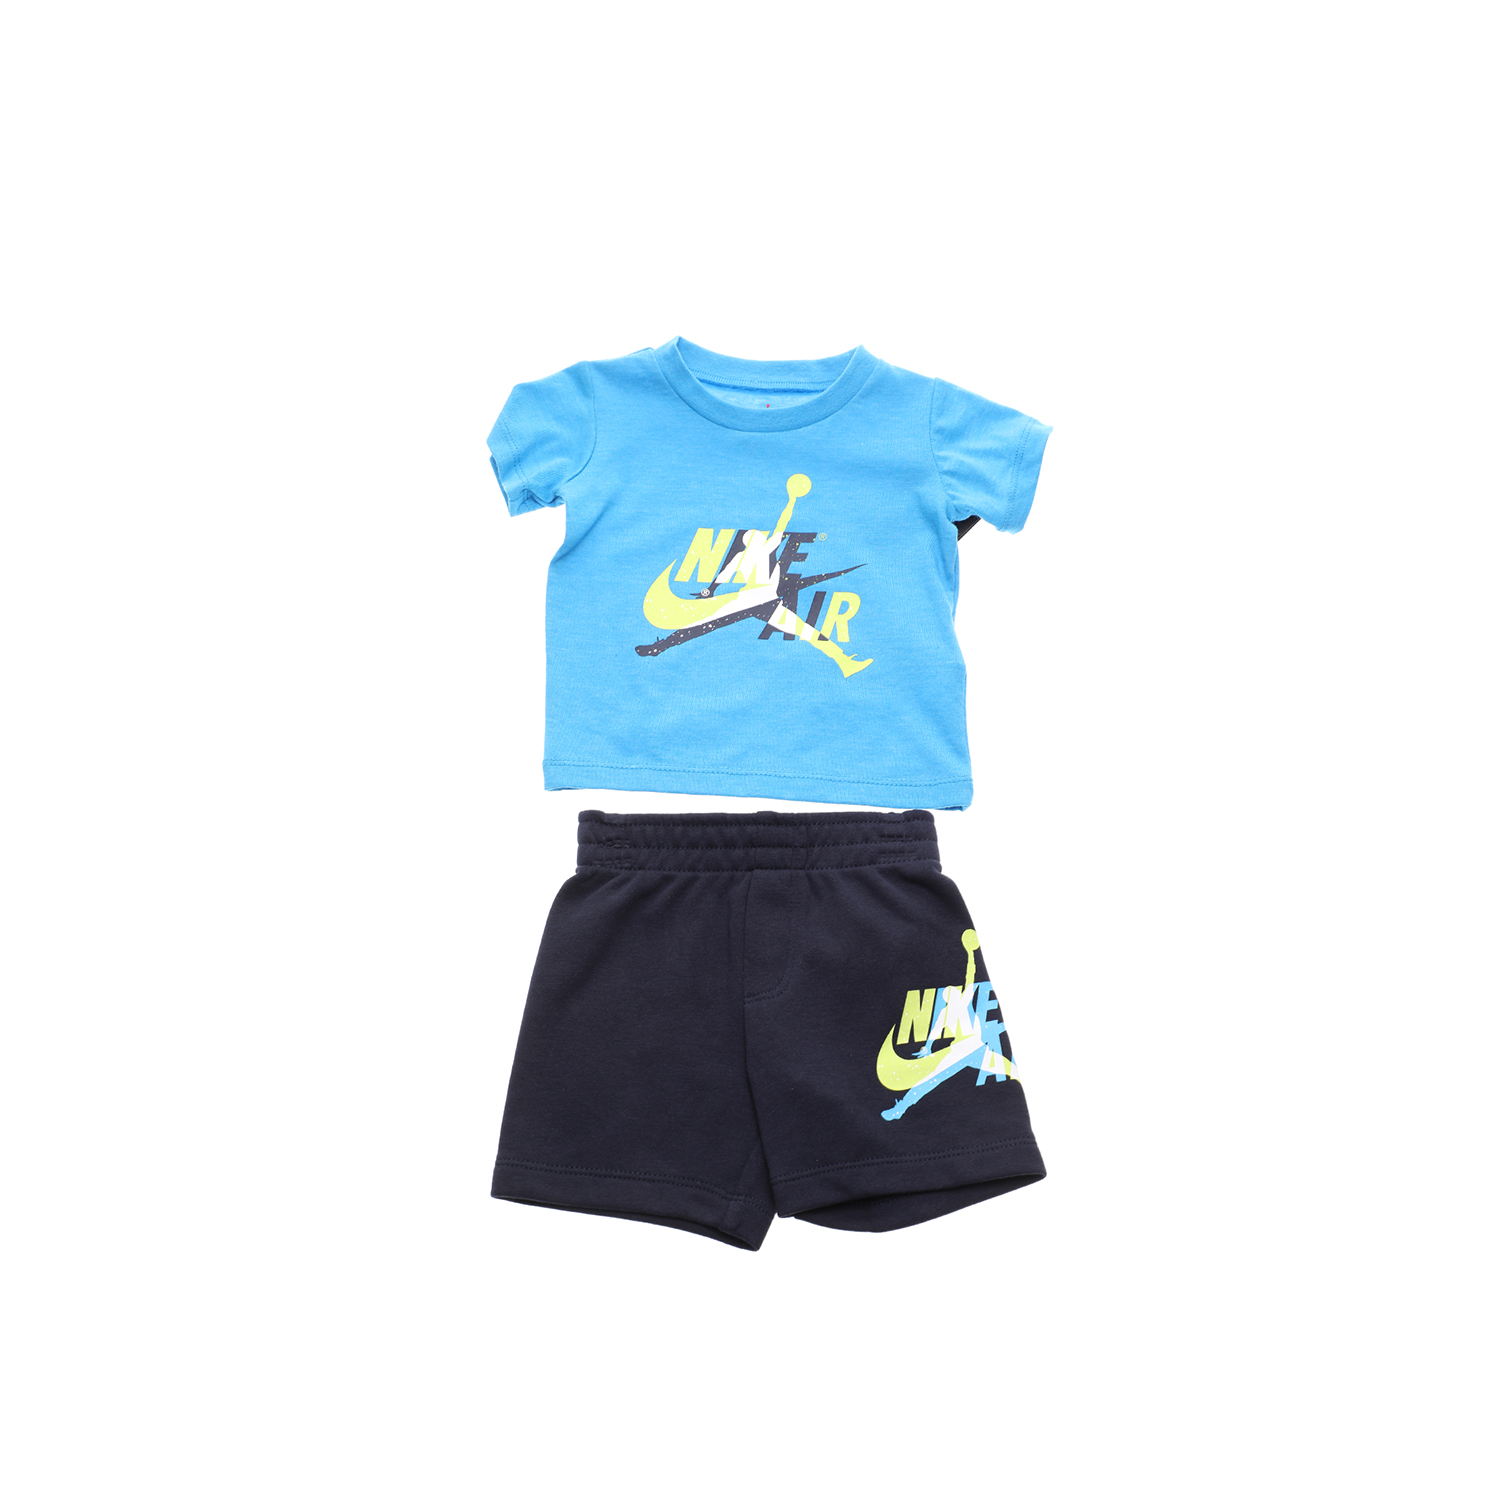 Παιδικά/Baby/Ρούχα/Σετ NIKE - Βρεφικό σετ μπλούζα σορτς JUMPMAN CLASSIC SET μπλε